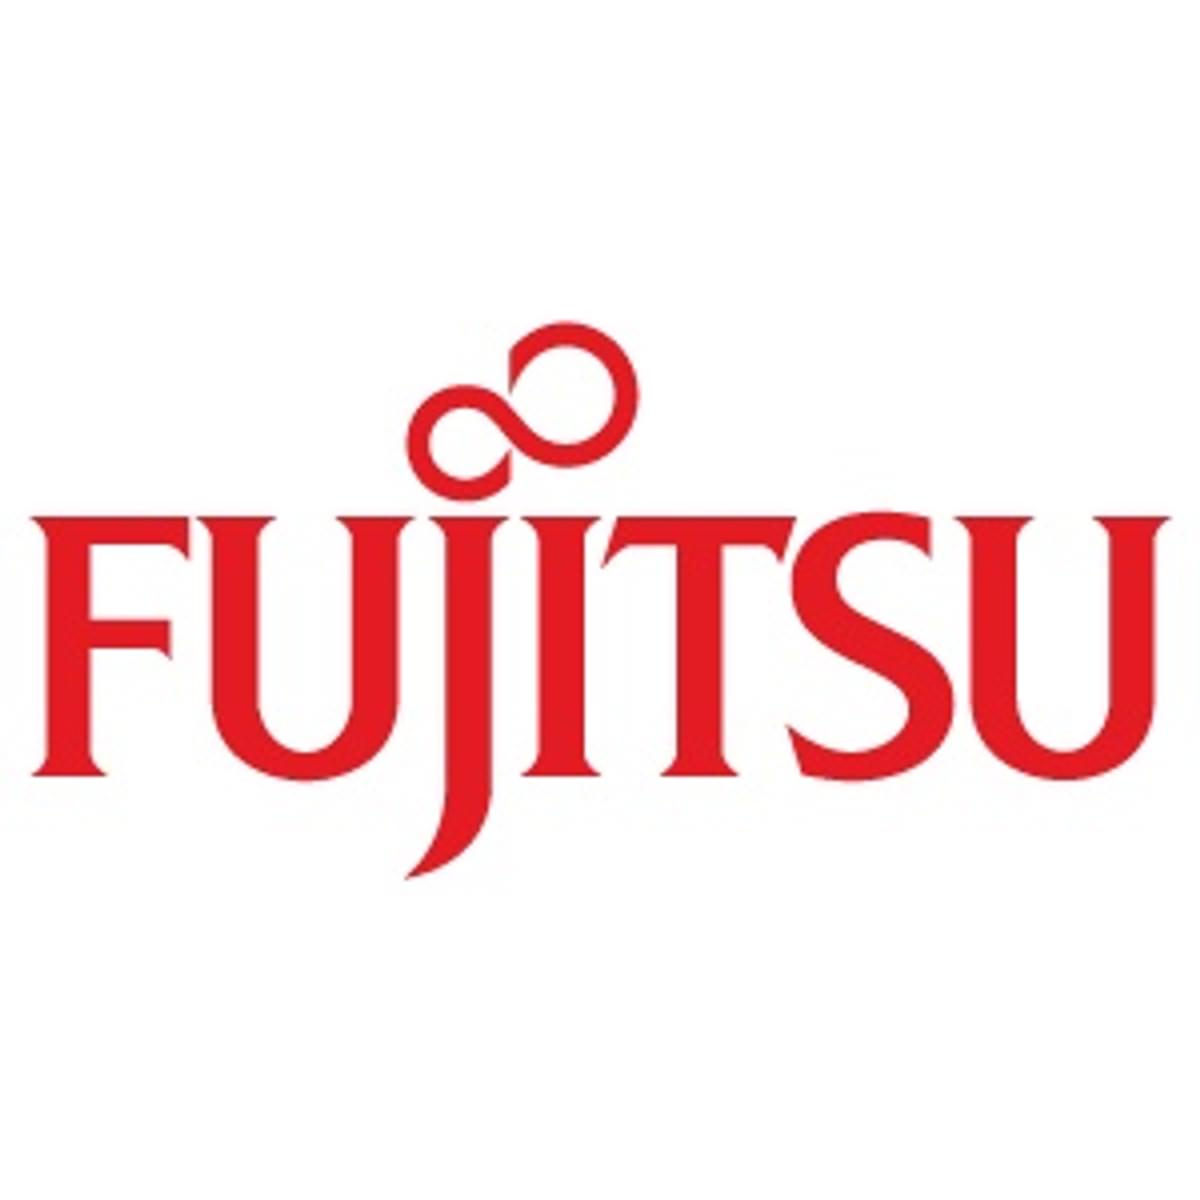 Fujitsu World Tour 2018 image